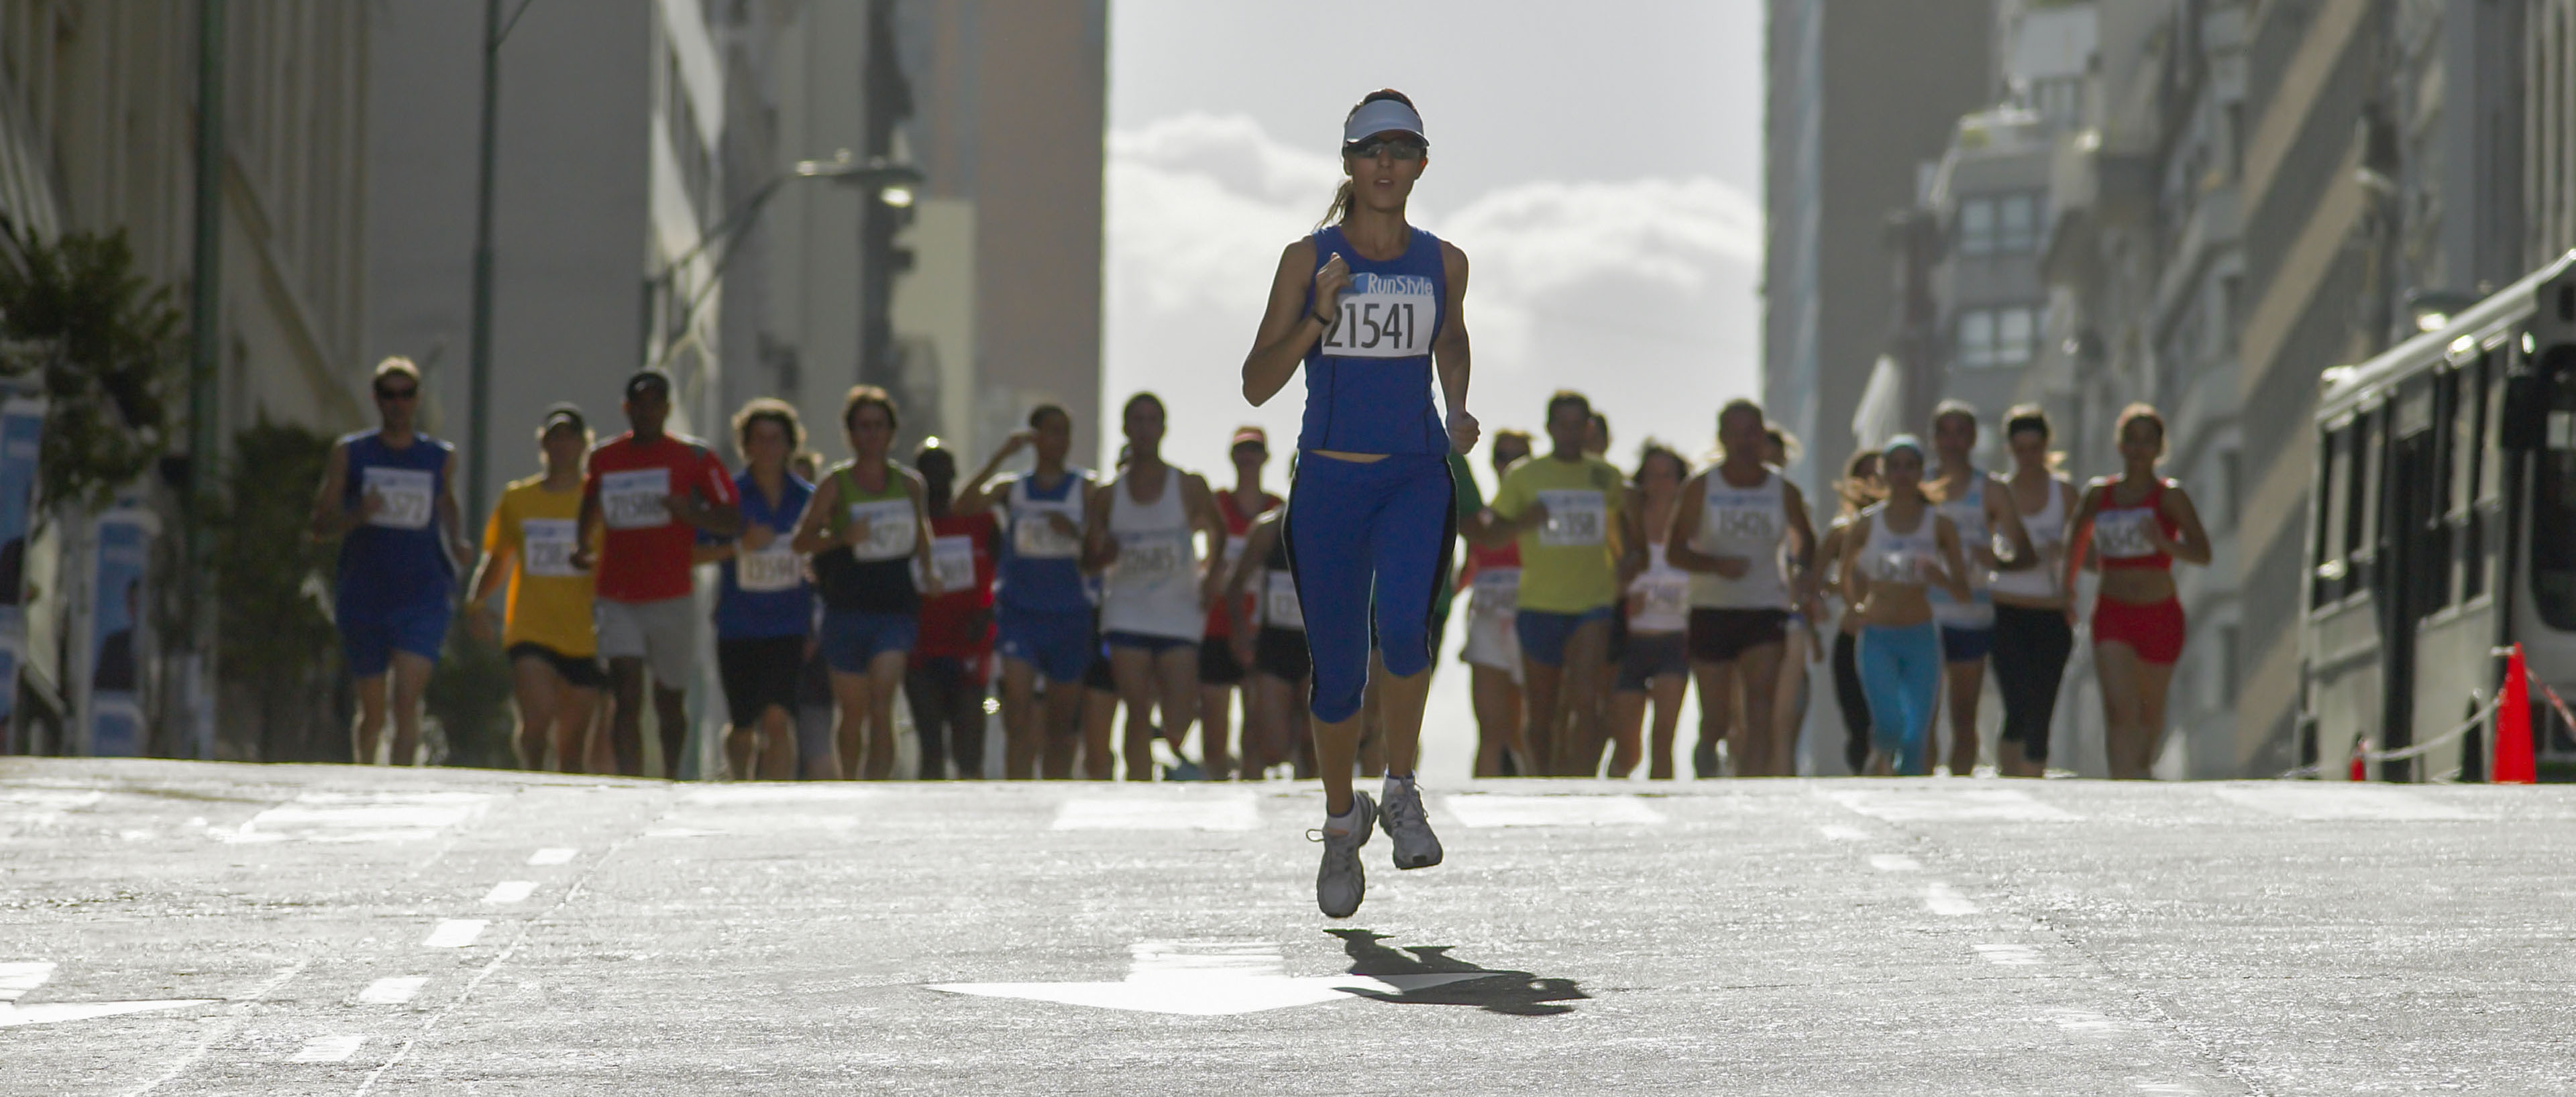 Mujer corriendo frente a grupo en una maratón